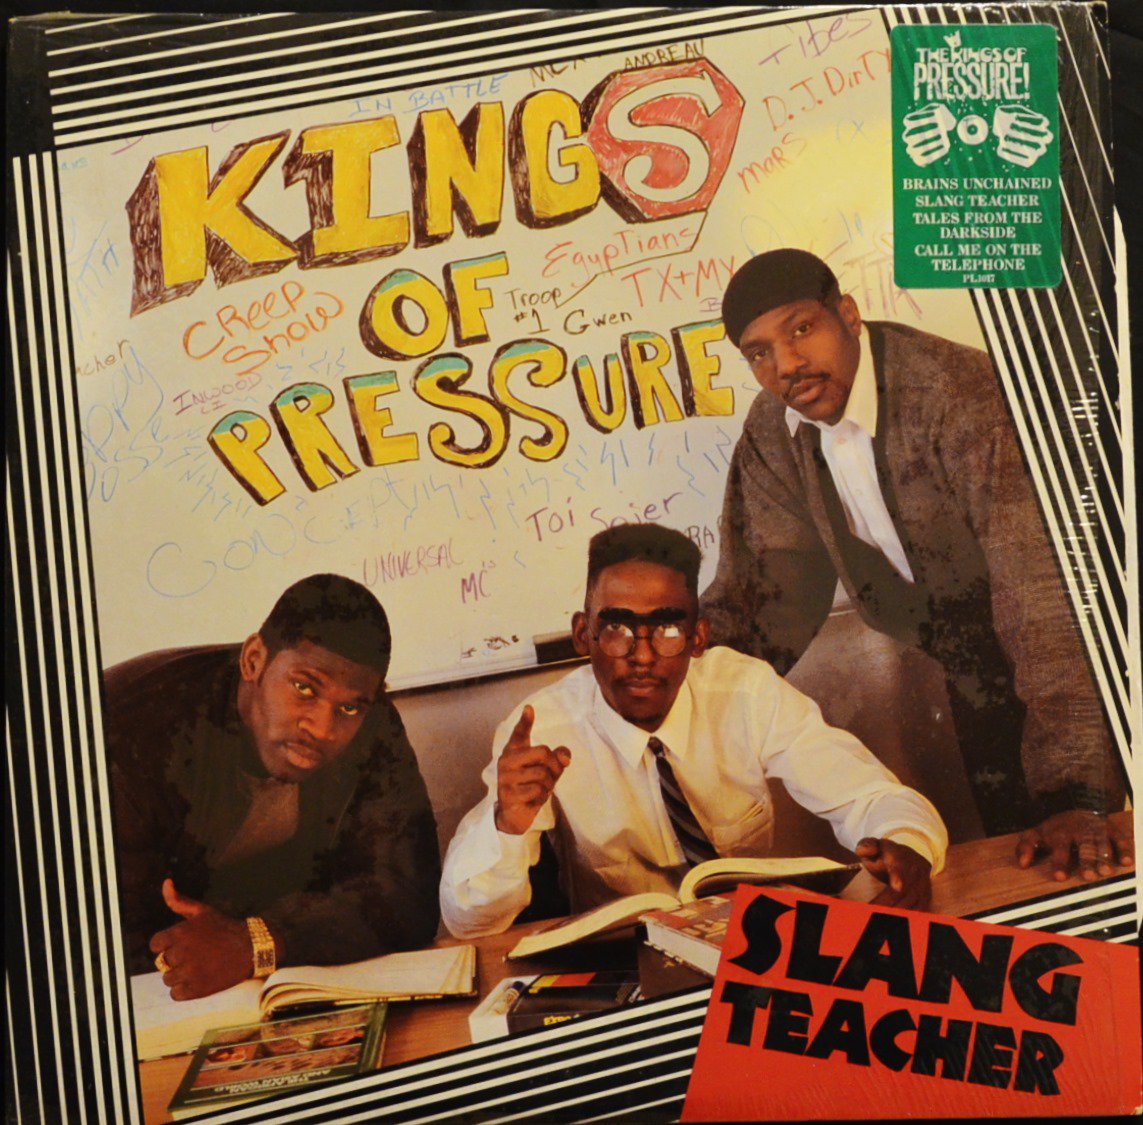 KINGS OF PRESSURE ‎/ SLANG TEACHER (1LP)